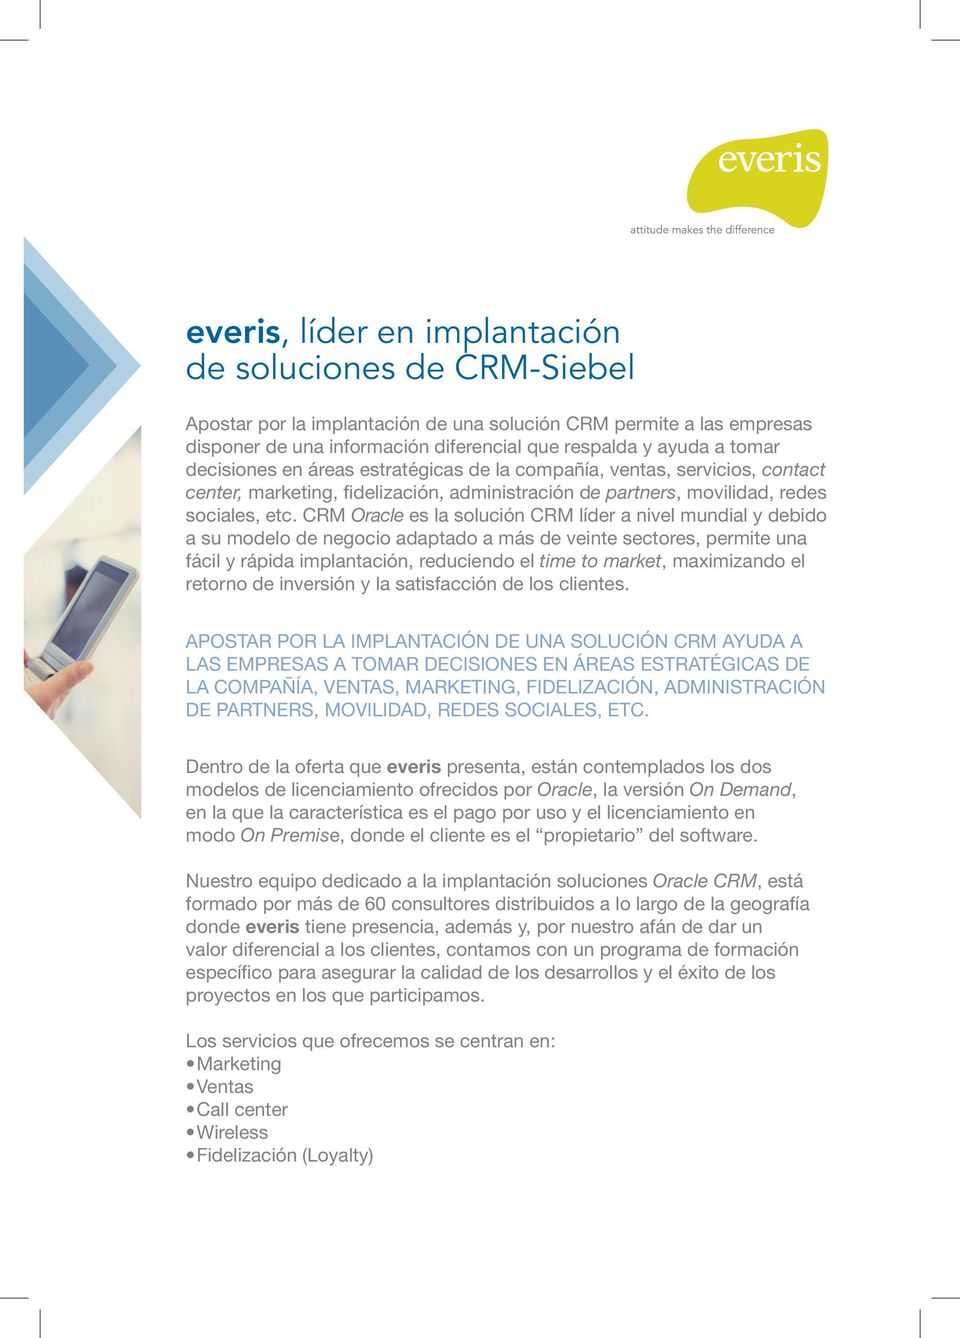 CRM Oracle es la solución CRM líder a nivel mundial y debido a su modelo de negocio adaptado a más de veinte sectores, permite una fácil y rápida implantación, reduciendo el time to market,